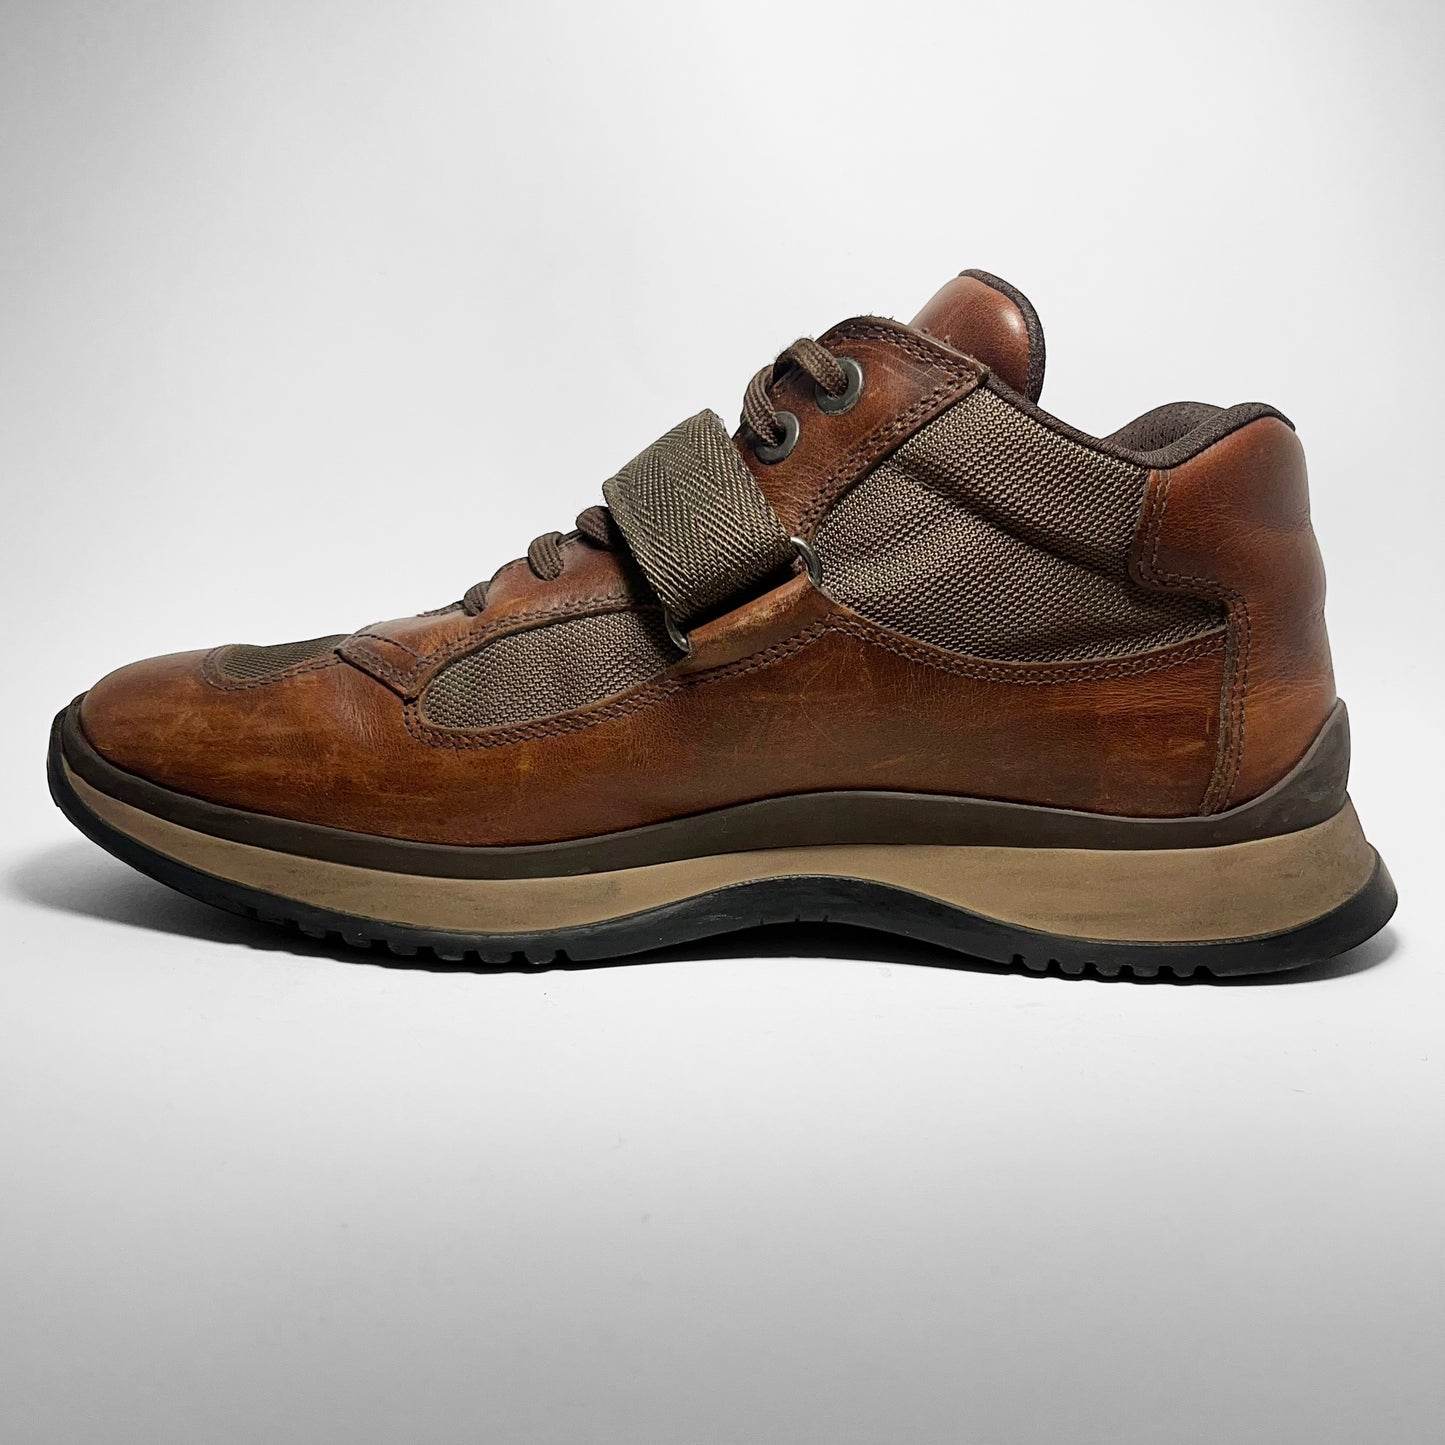 Prada Velcro Leather Shoes (2000s)